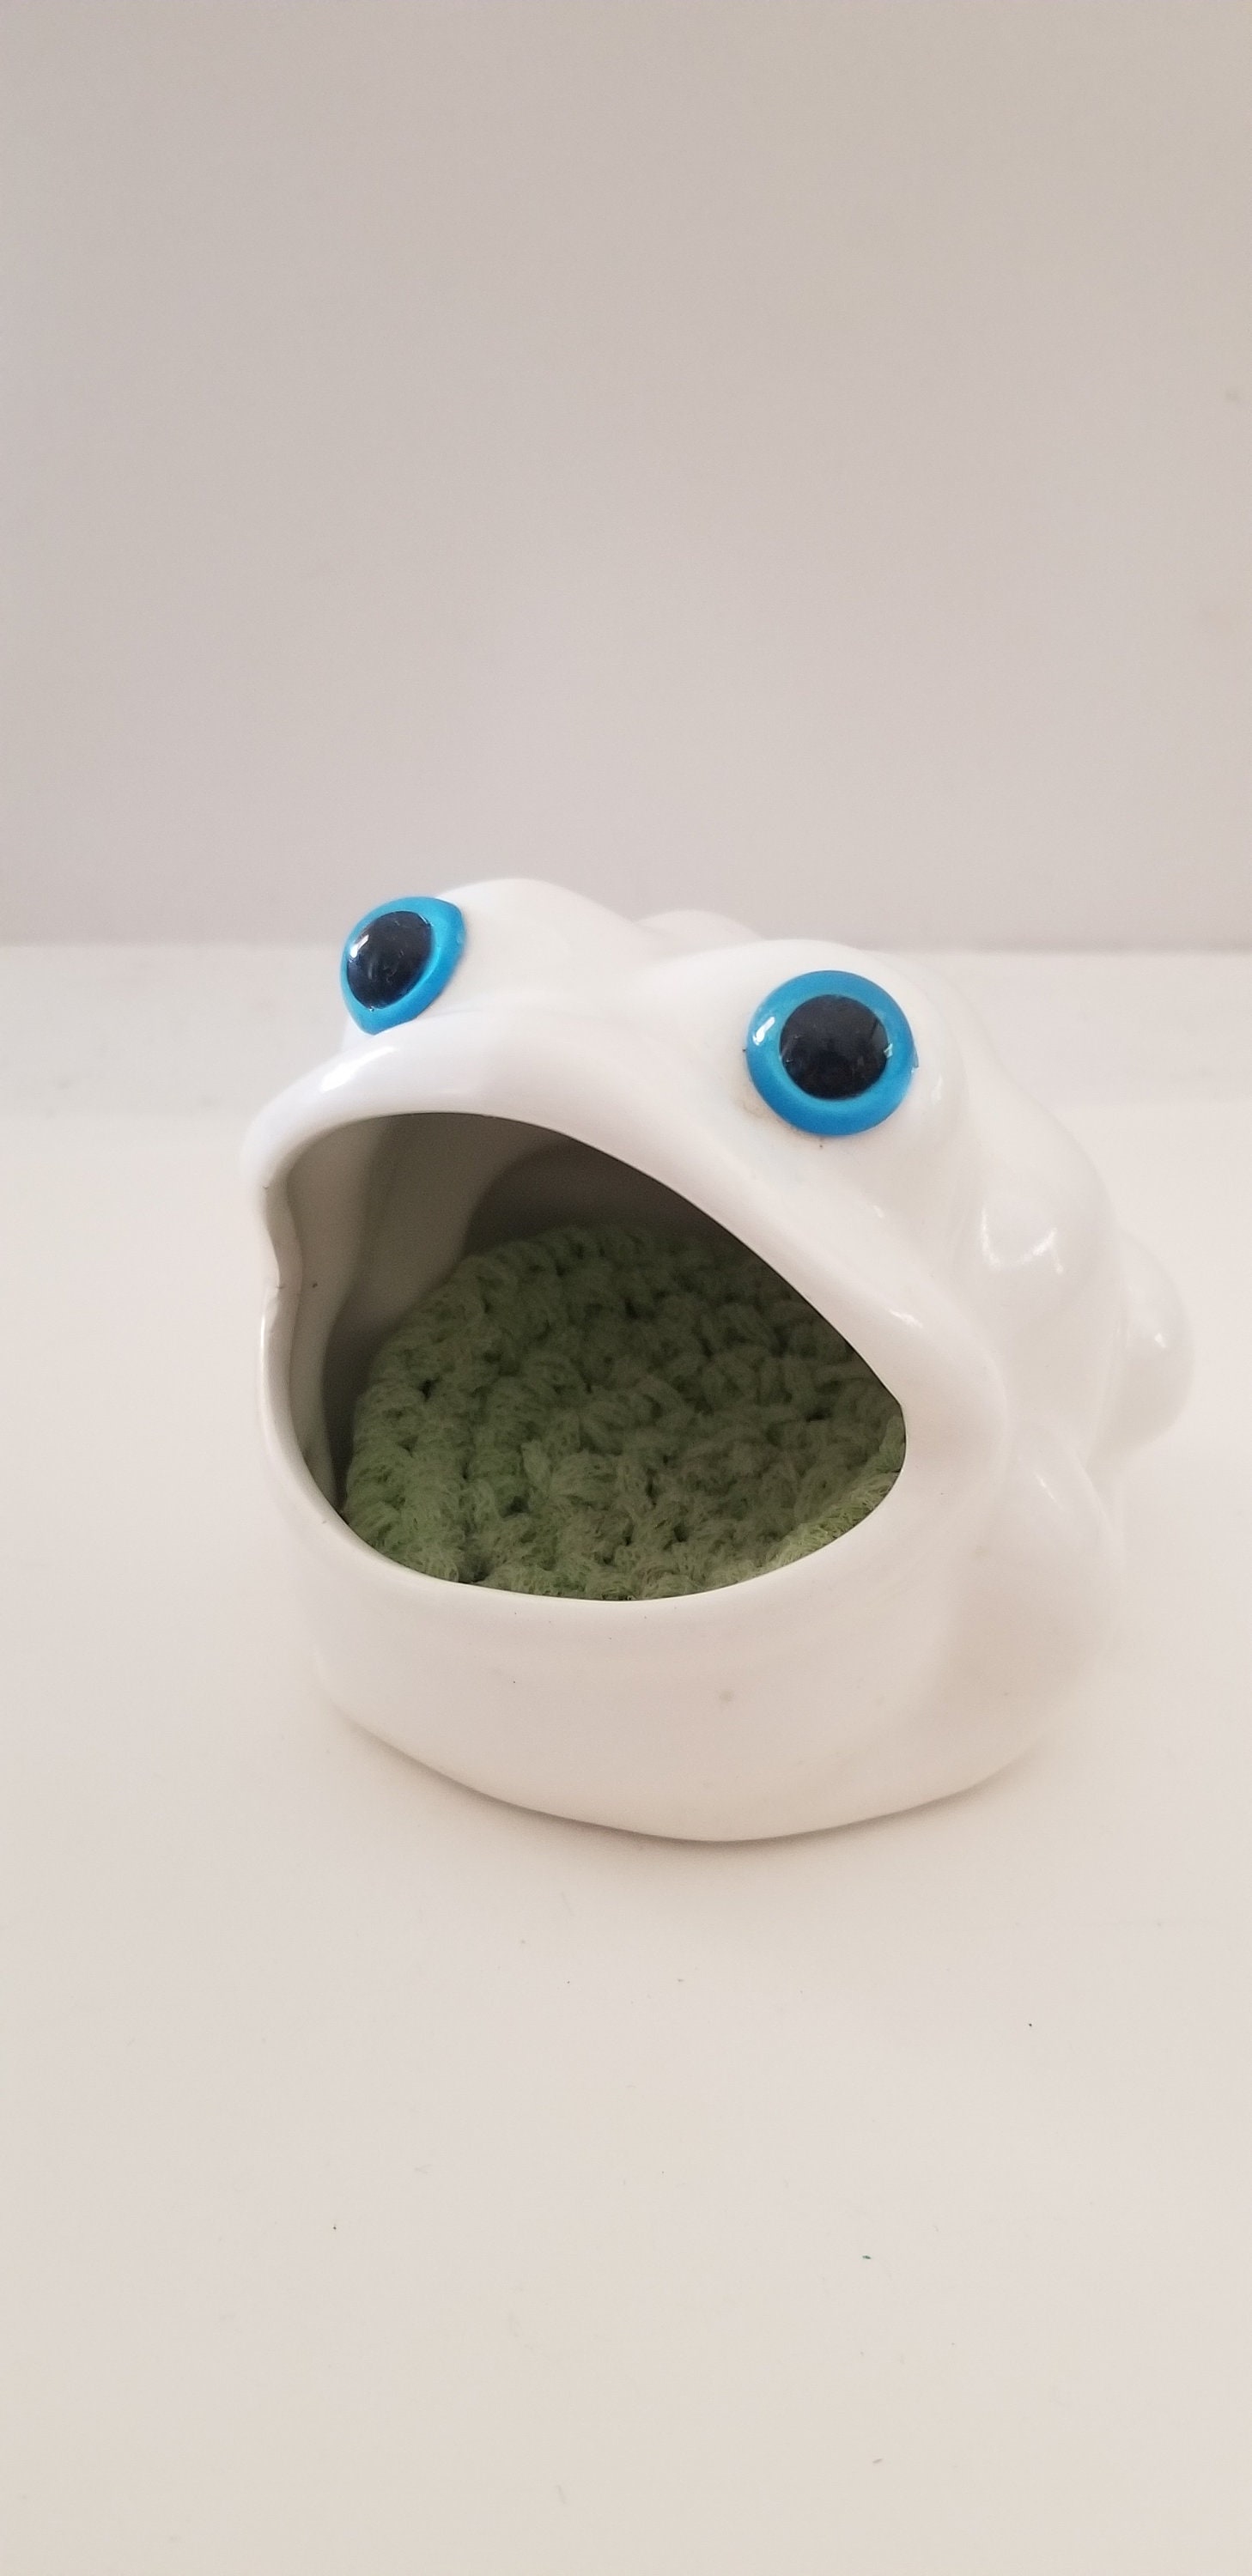 Frog Brillo or sponge holder